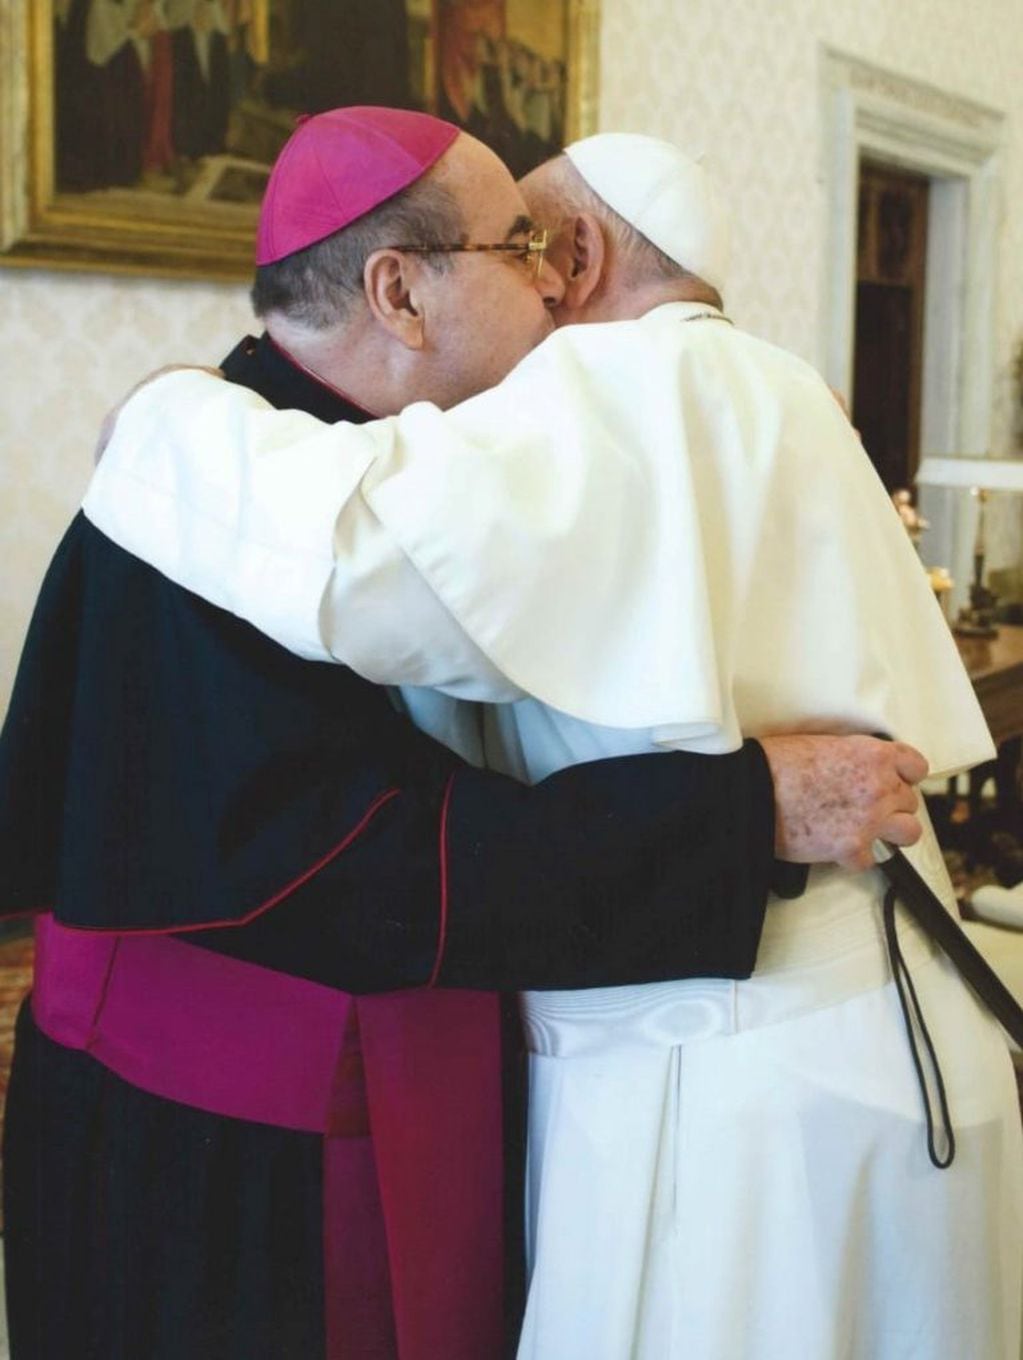 Beso y abrazo fraternal entre el obispo de Iguazú, Martorell, y el Papa Francisco. (Vaticano)